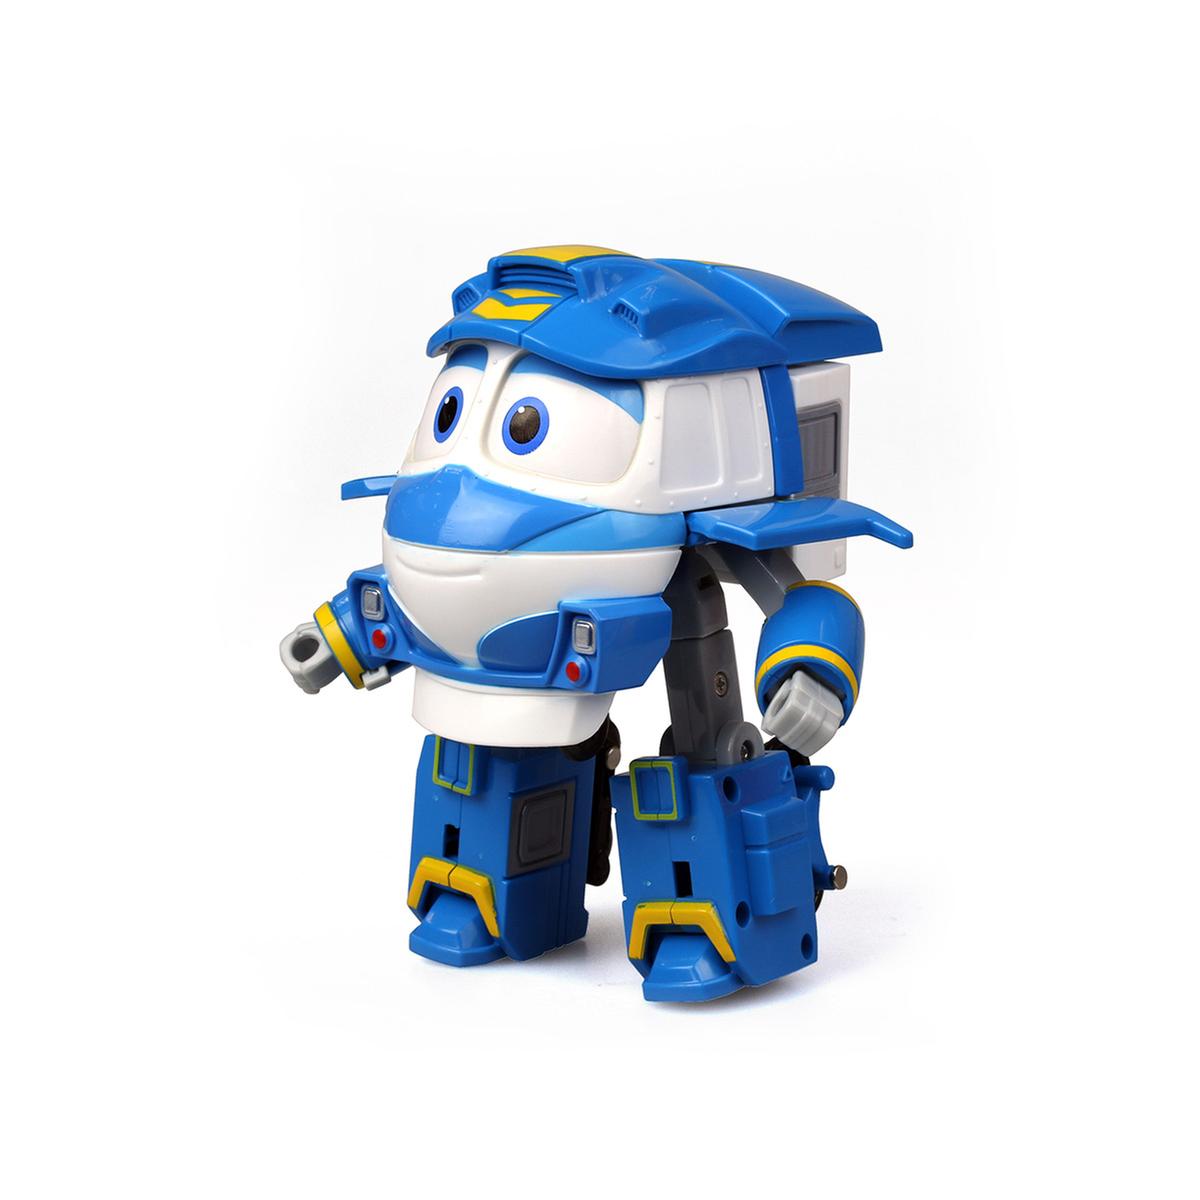 Robotrains - Robotrain Transformable (varios modelos) | Robot Trains |  Toys"R"Us España